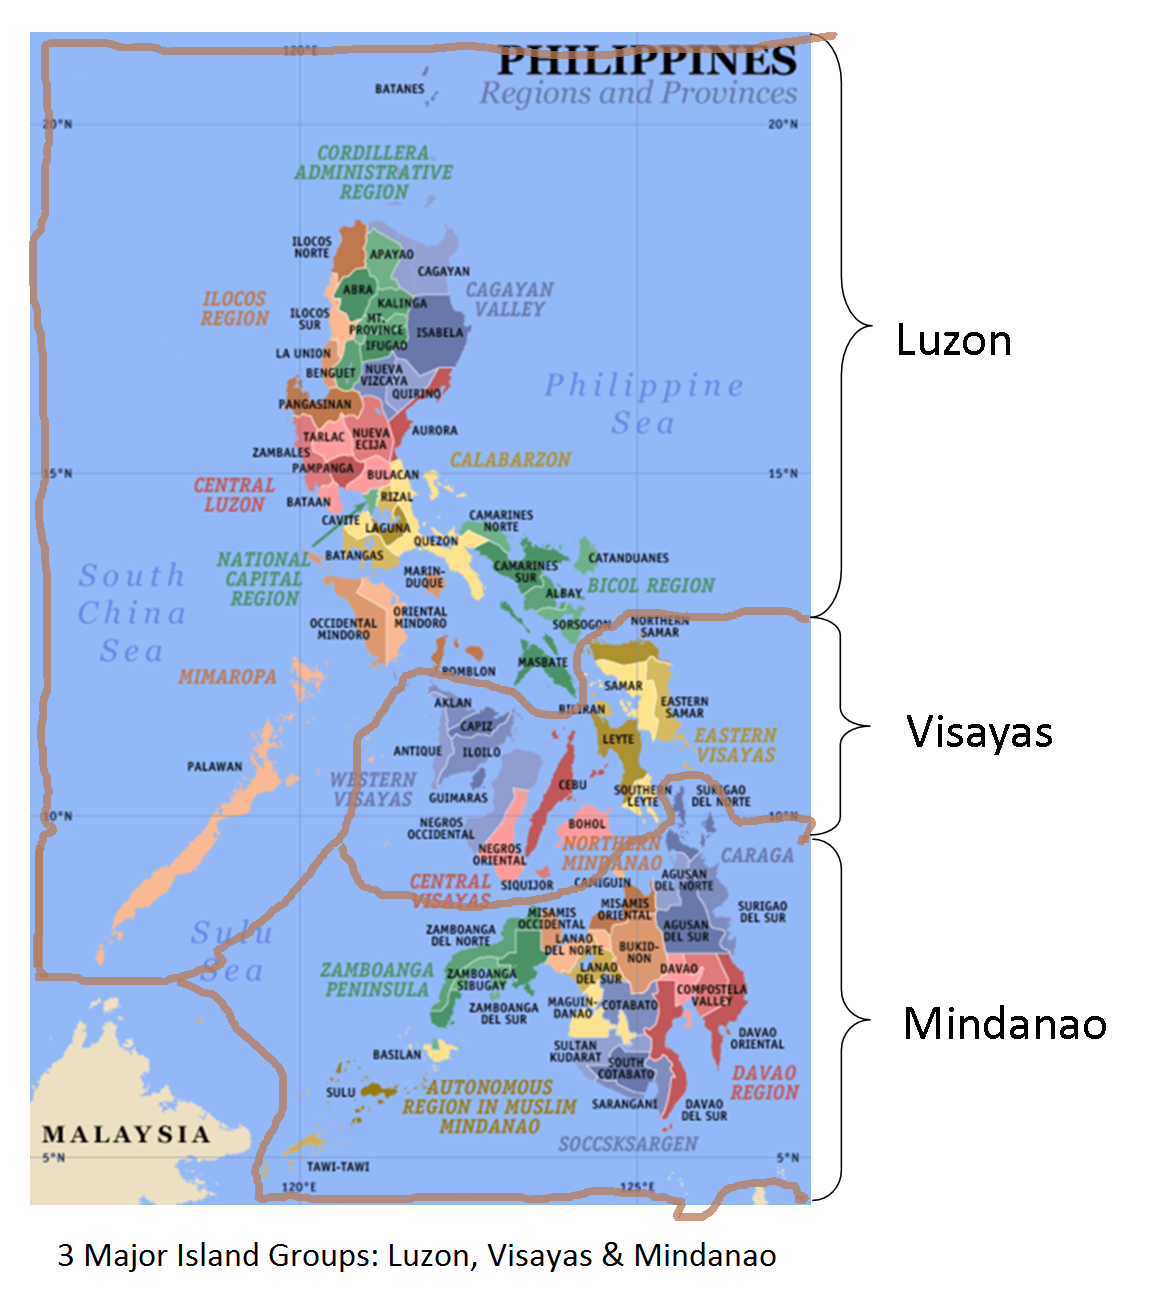 Where in the world is Cebu? – Marlon Cresencio Cabilan